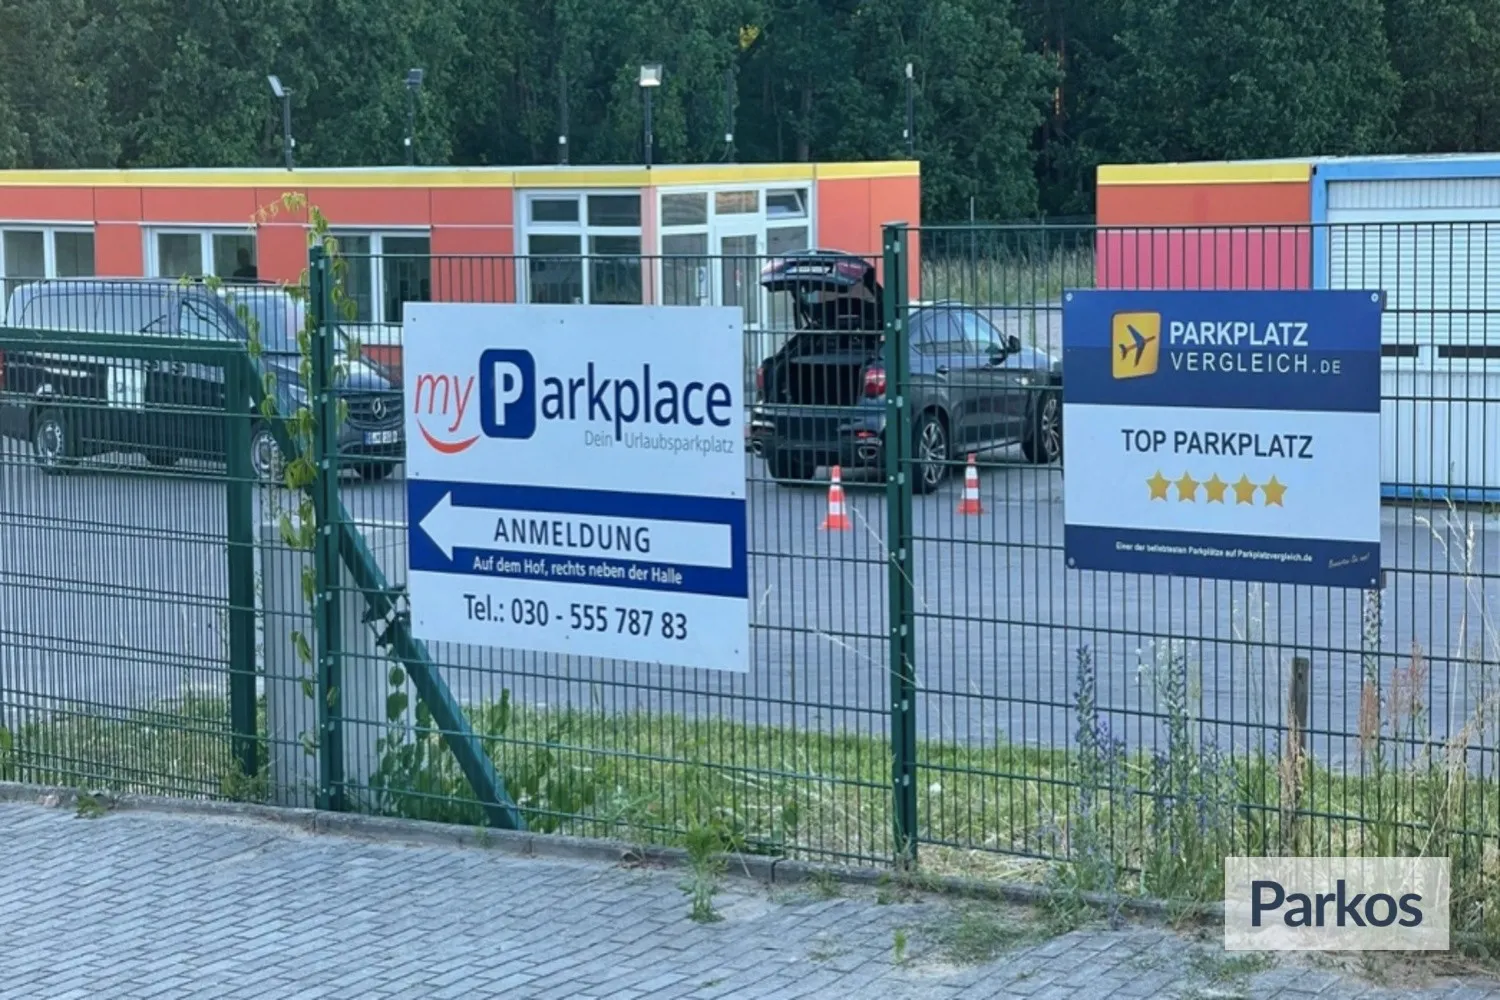 myParkplace - Berlin Brandenburg Airport Parking - picture 1